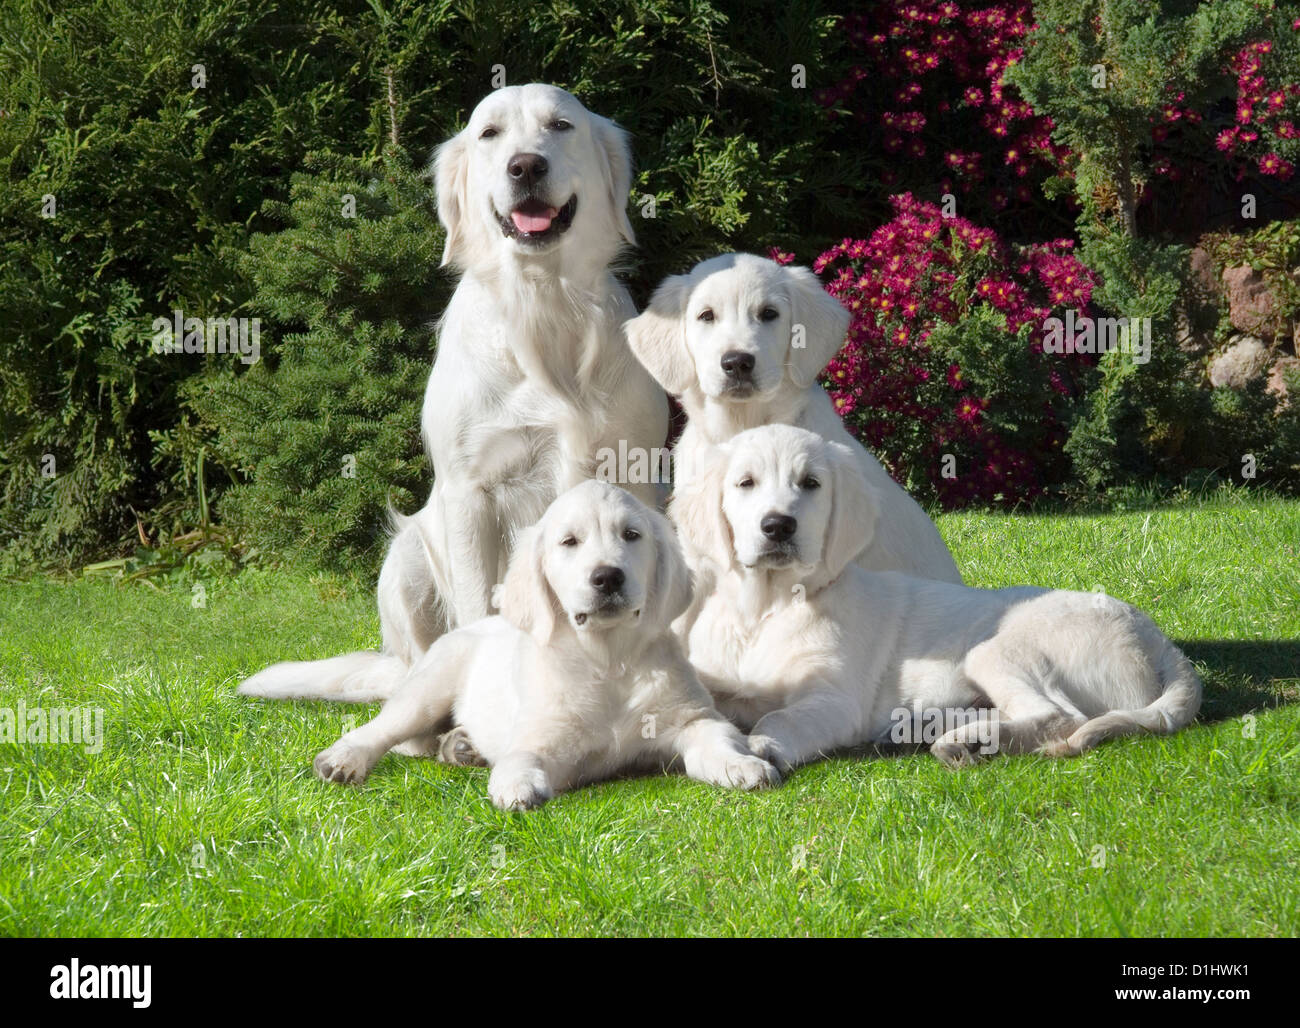 Four Golden Retriever dogs in the garden Stock Photo